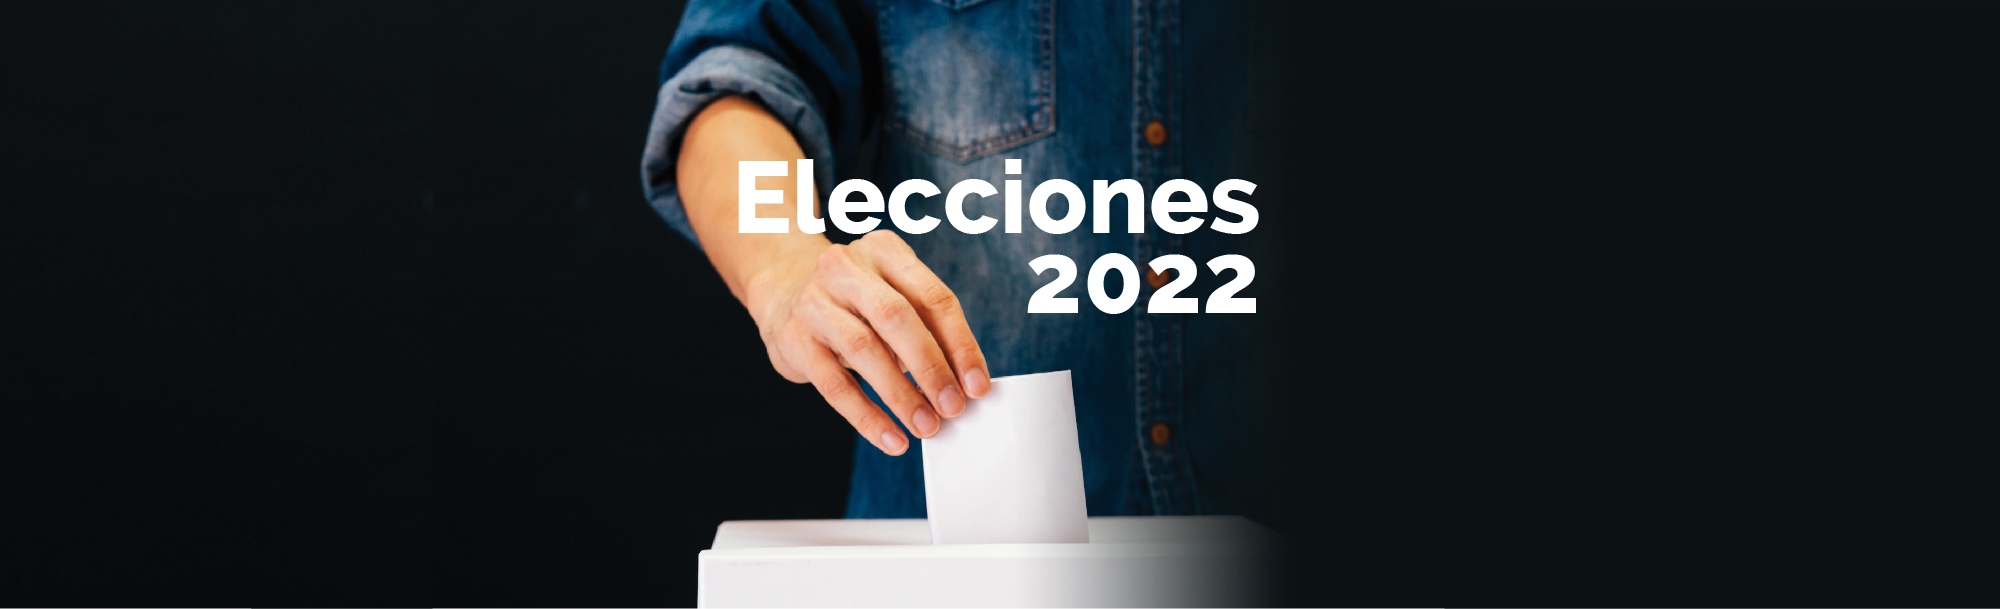 Elecciones 2022 